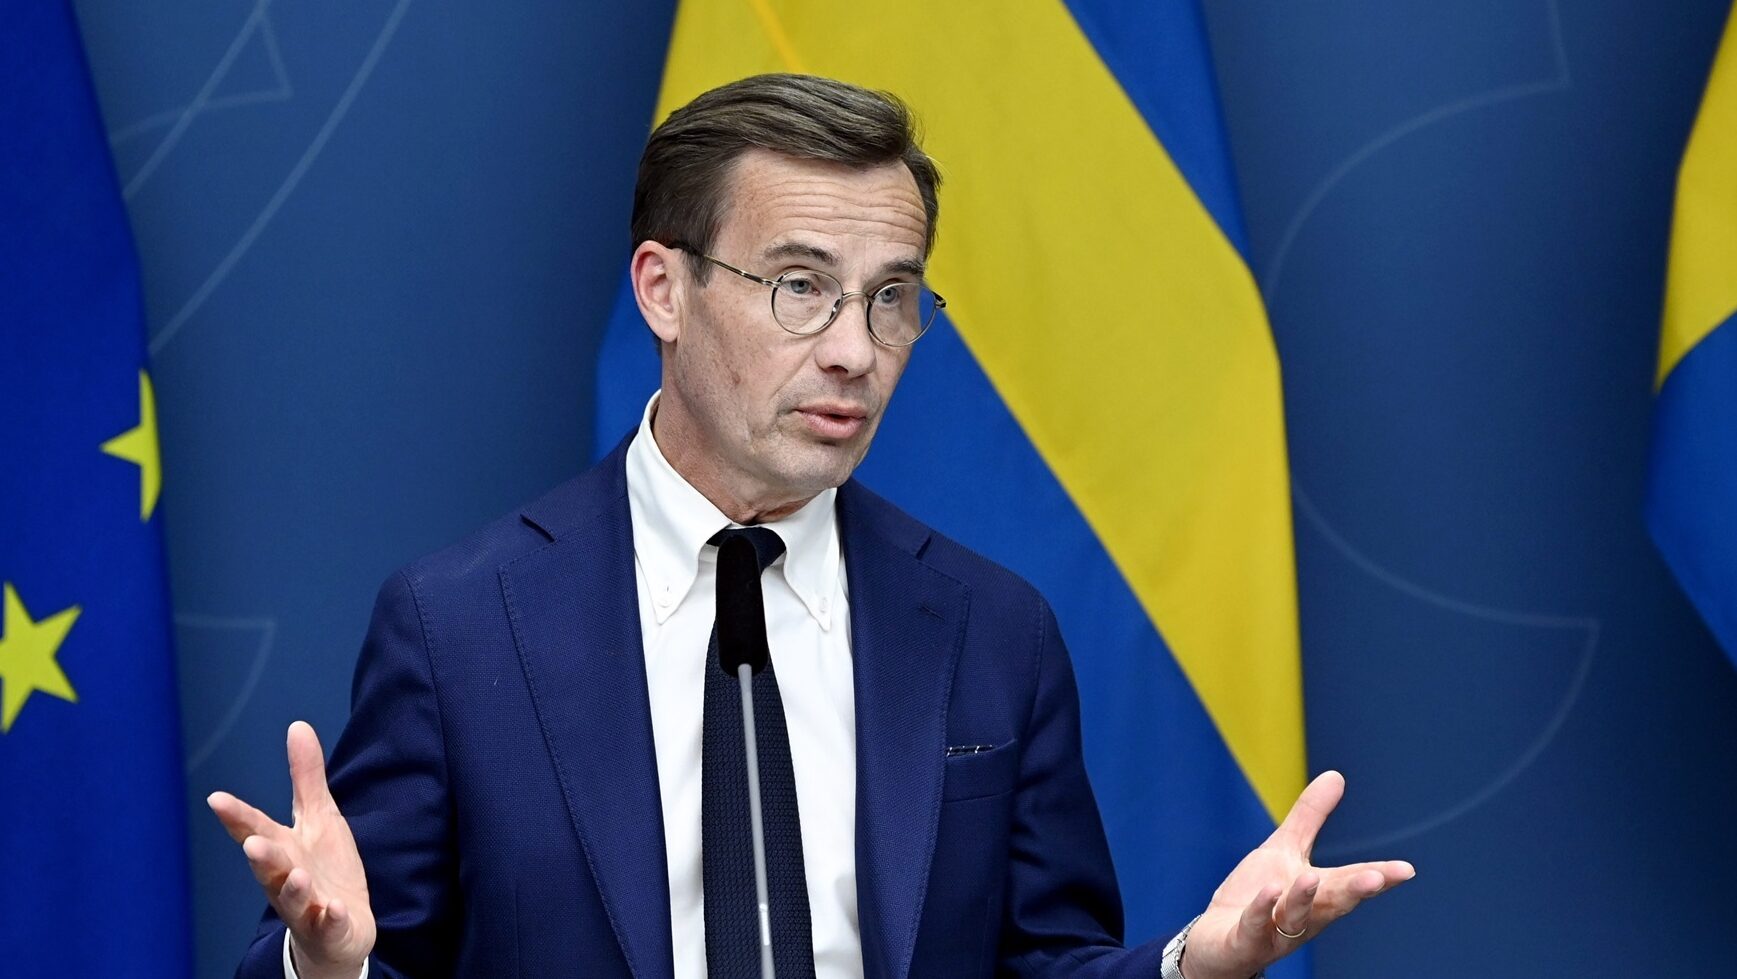 NATO membership bid by Sweden